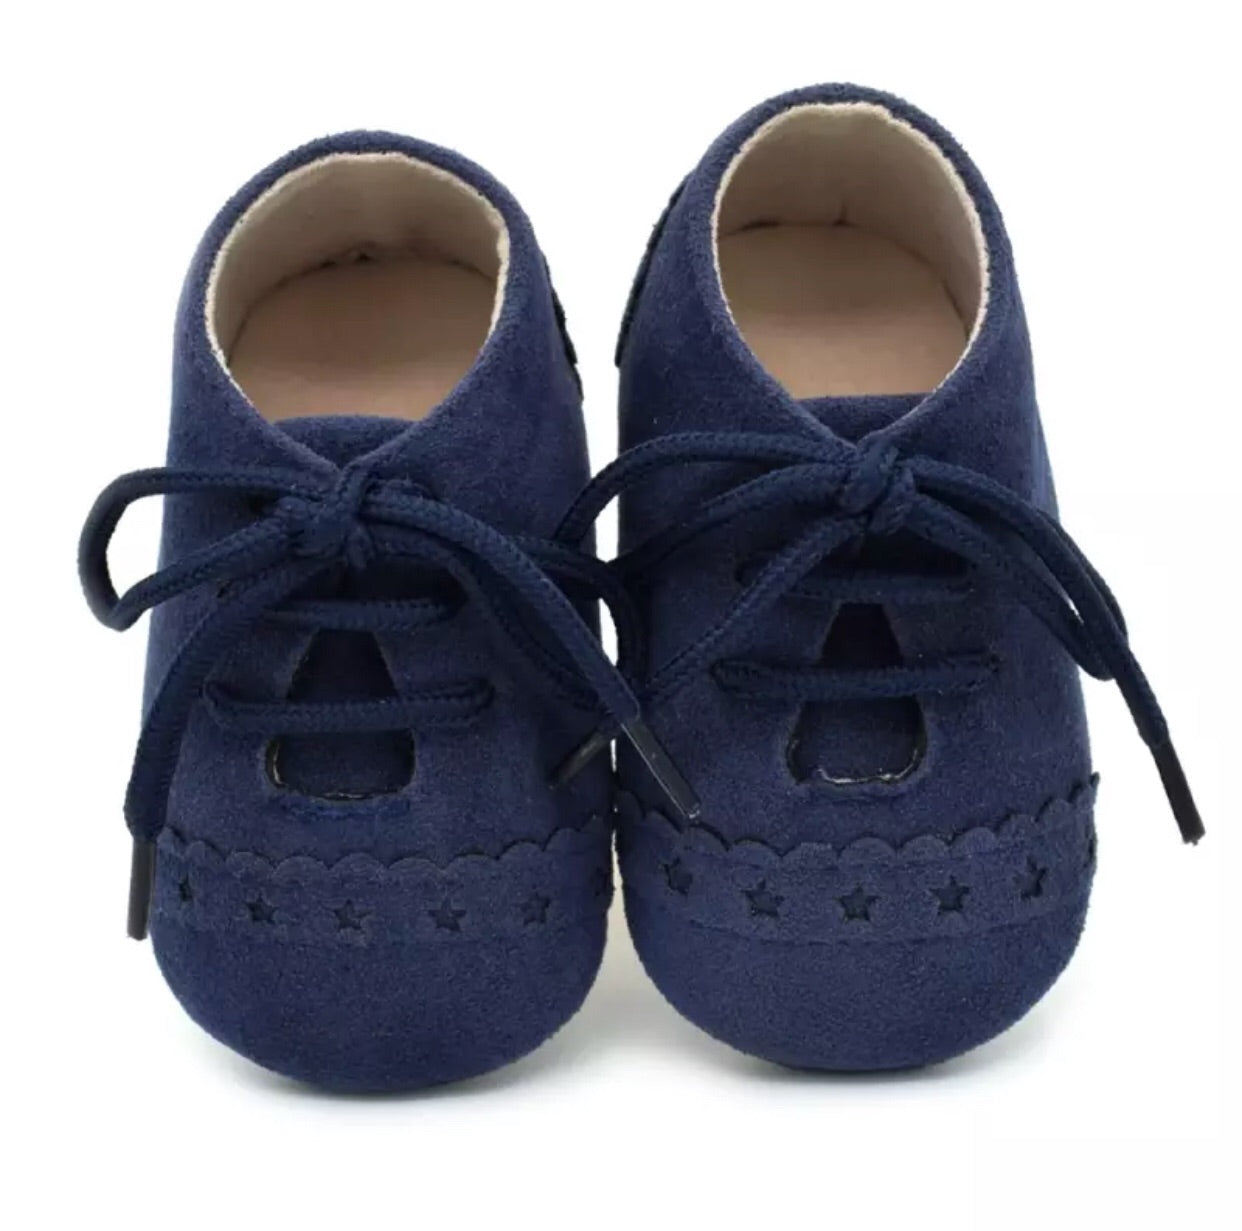 SALE Navy Suede Pre-Walker Baby Shoes